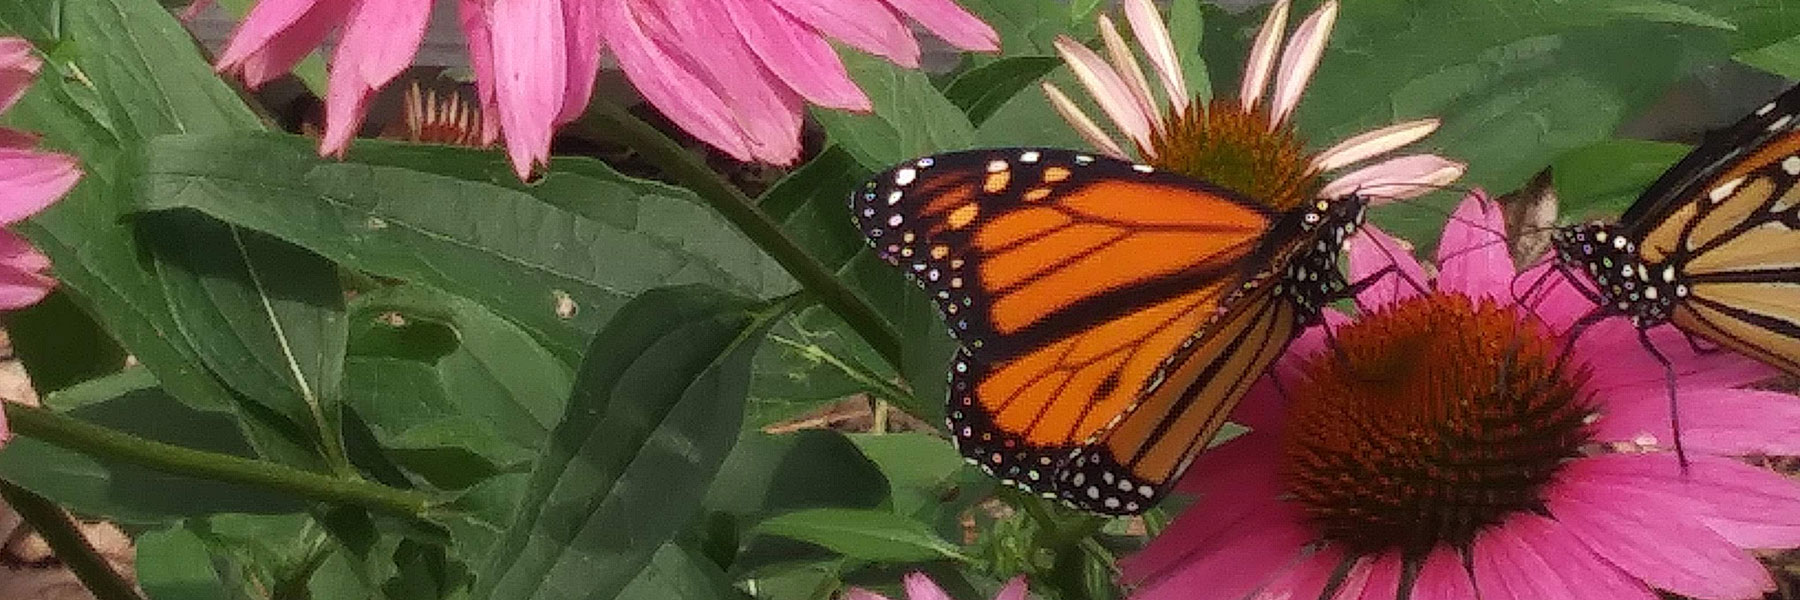 Butterfly Pollinators